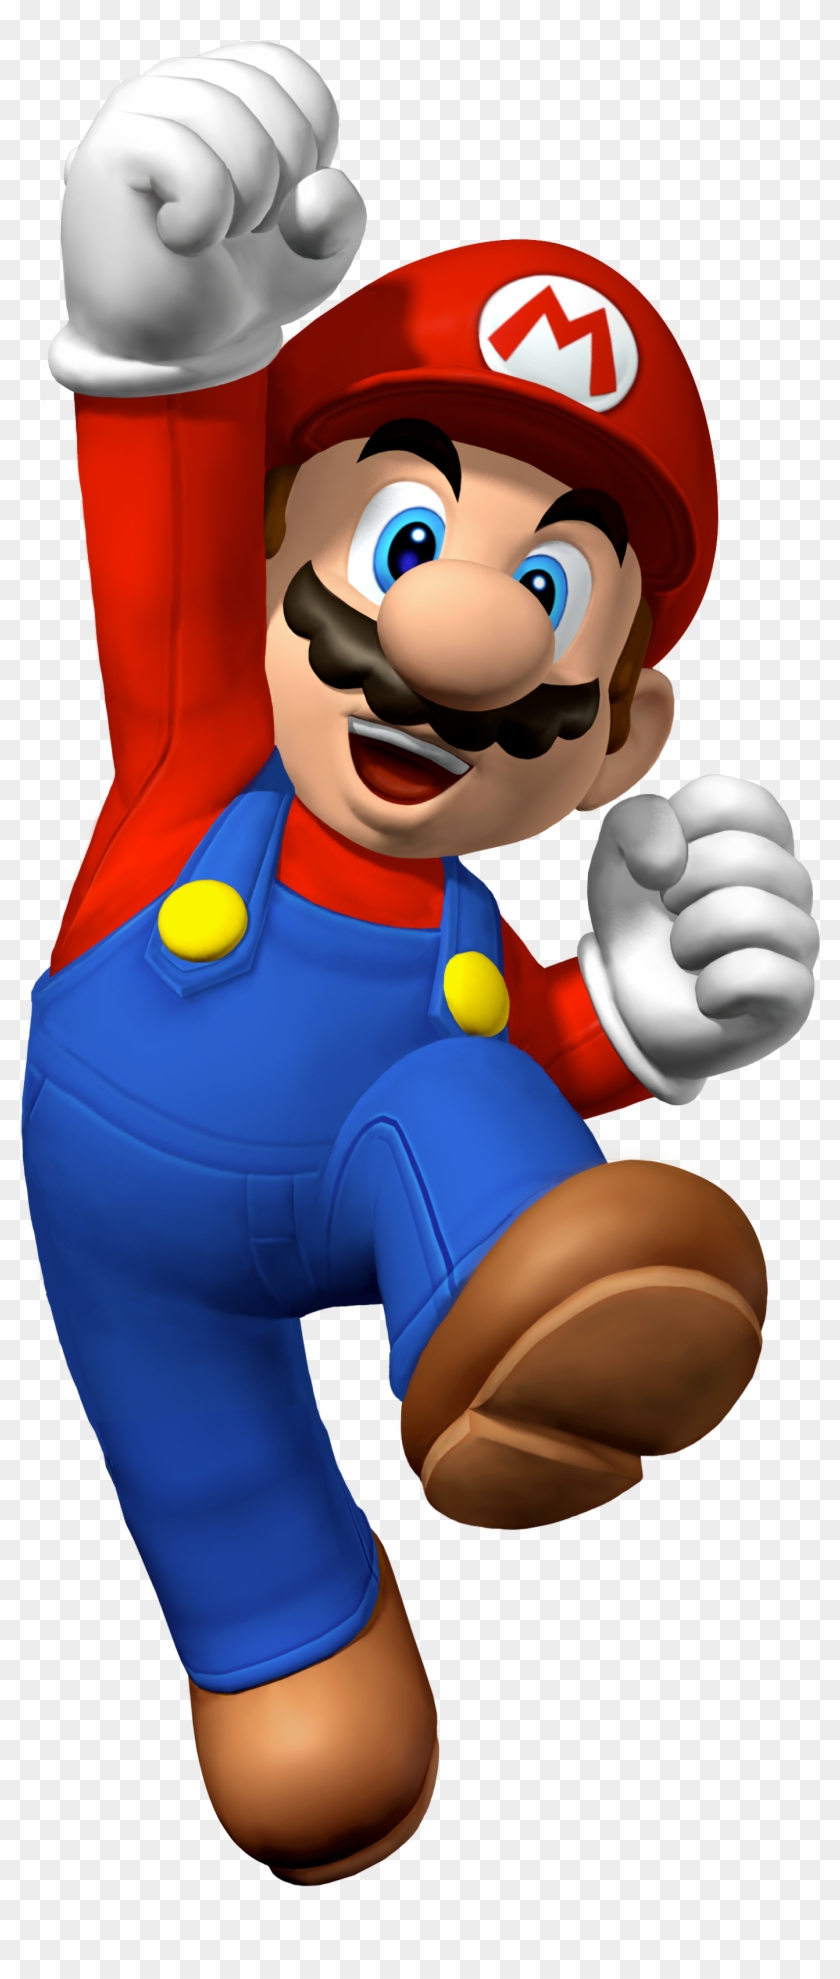 New Super Mario Bros - Mario Bros Clipart #443268